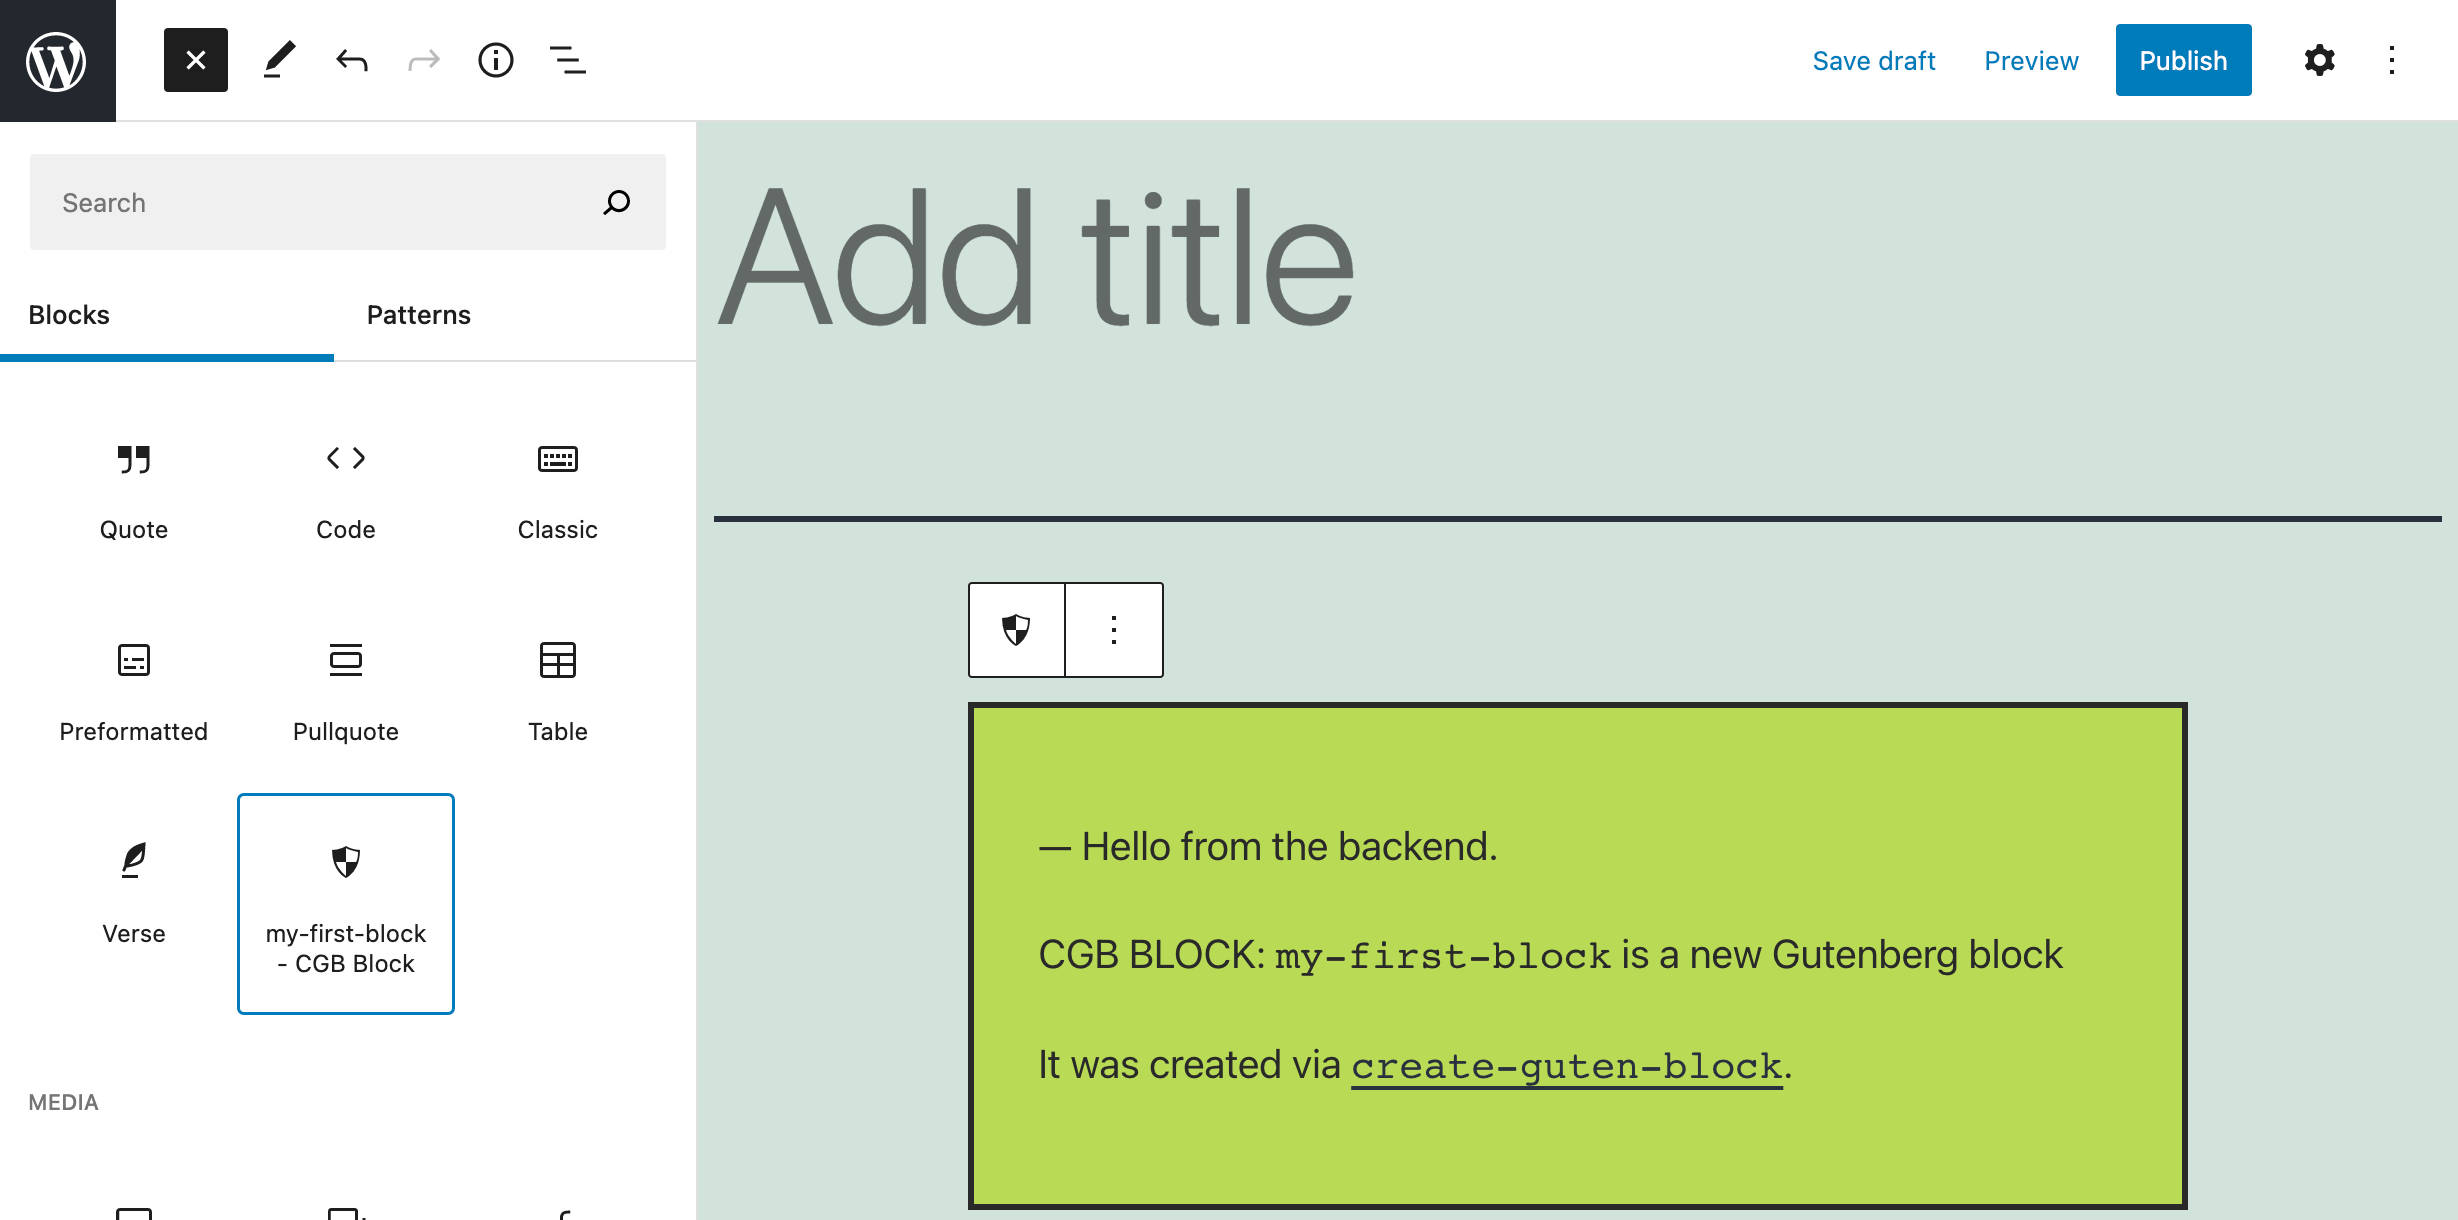 Un nouveau bloc créé avec create-guten-block.